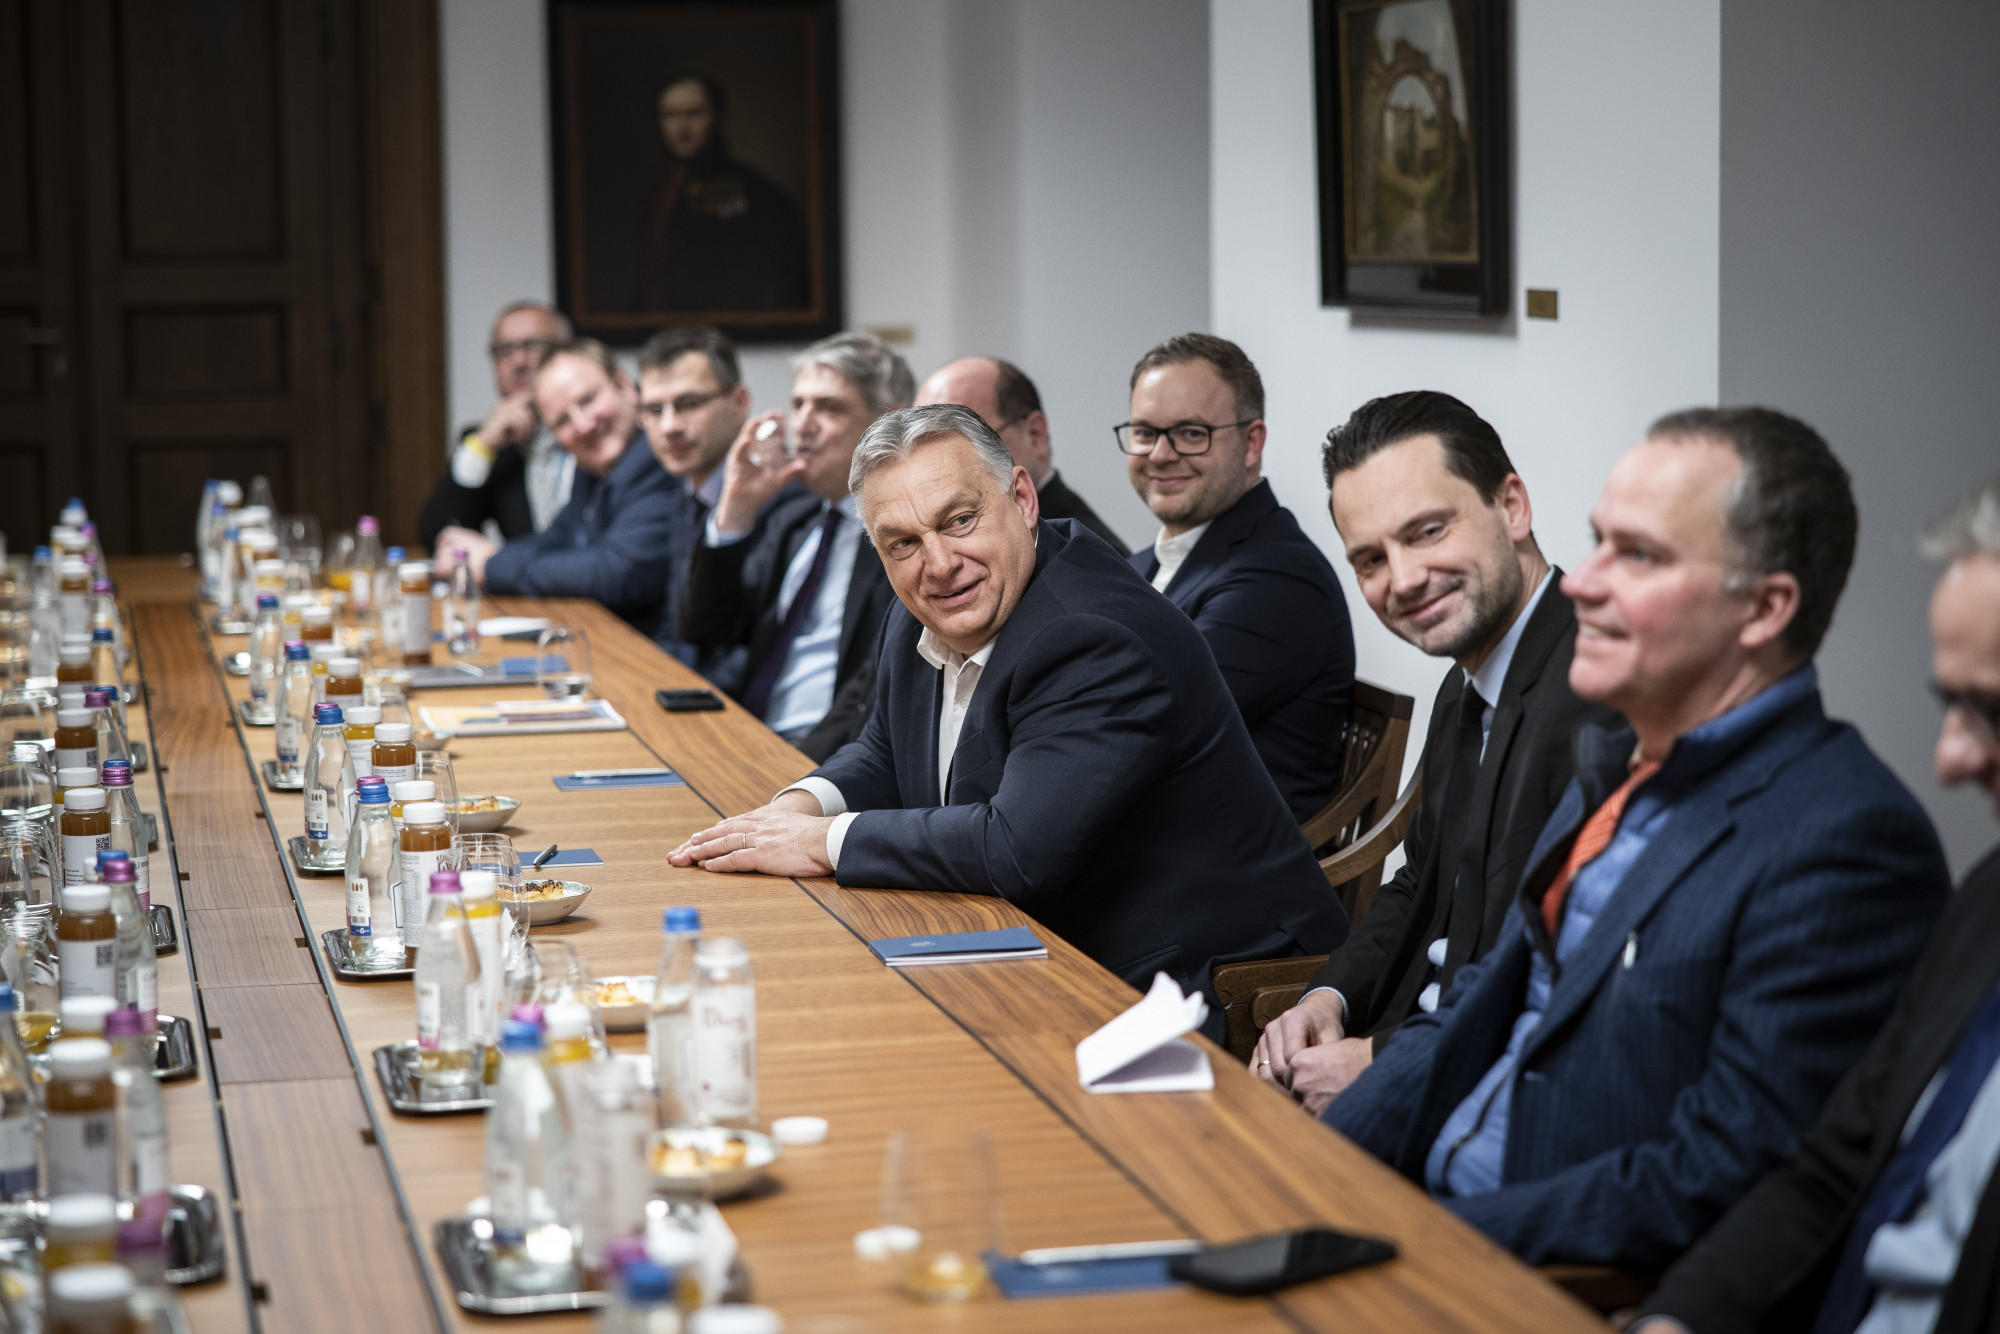 Az amerikai újságíró szerint Orbán csak viccelt az EU-ból való kilépéssel